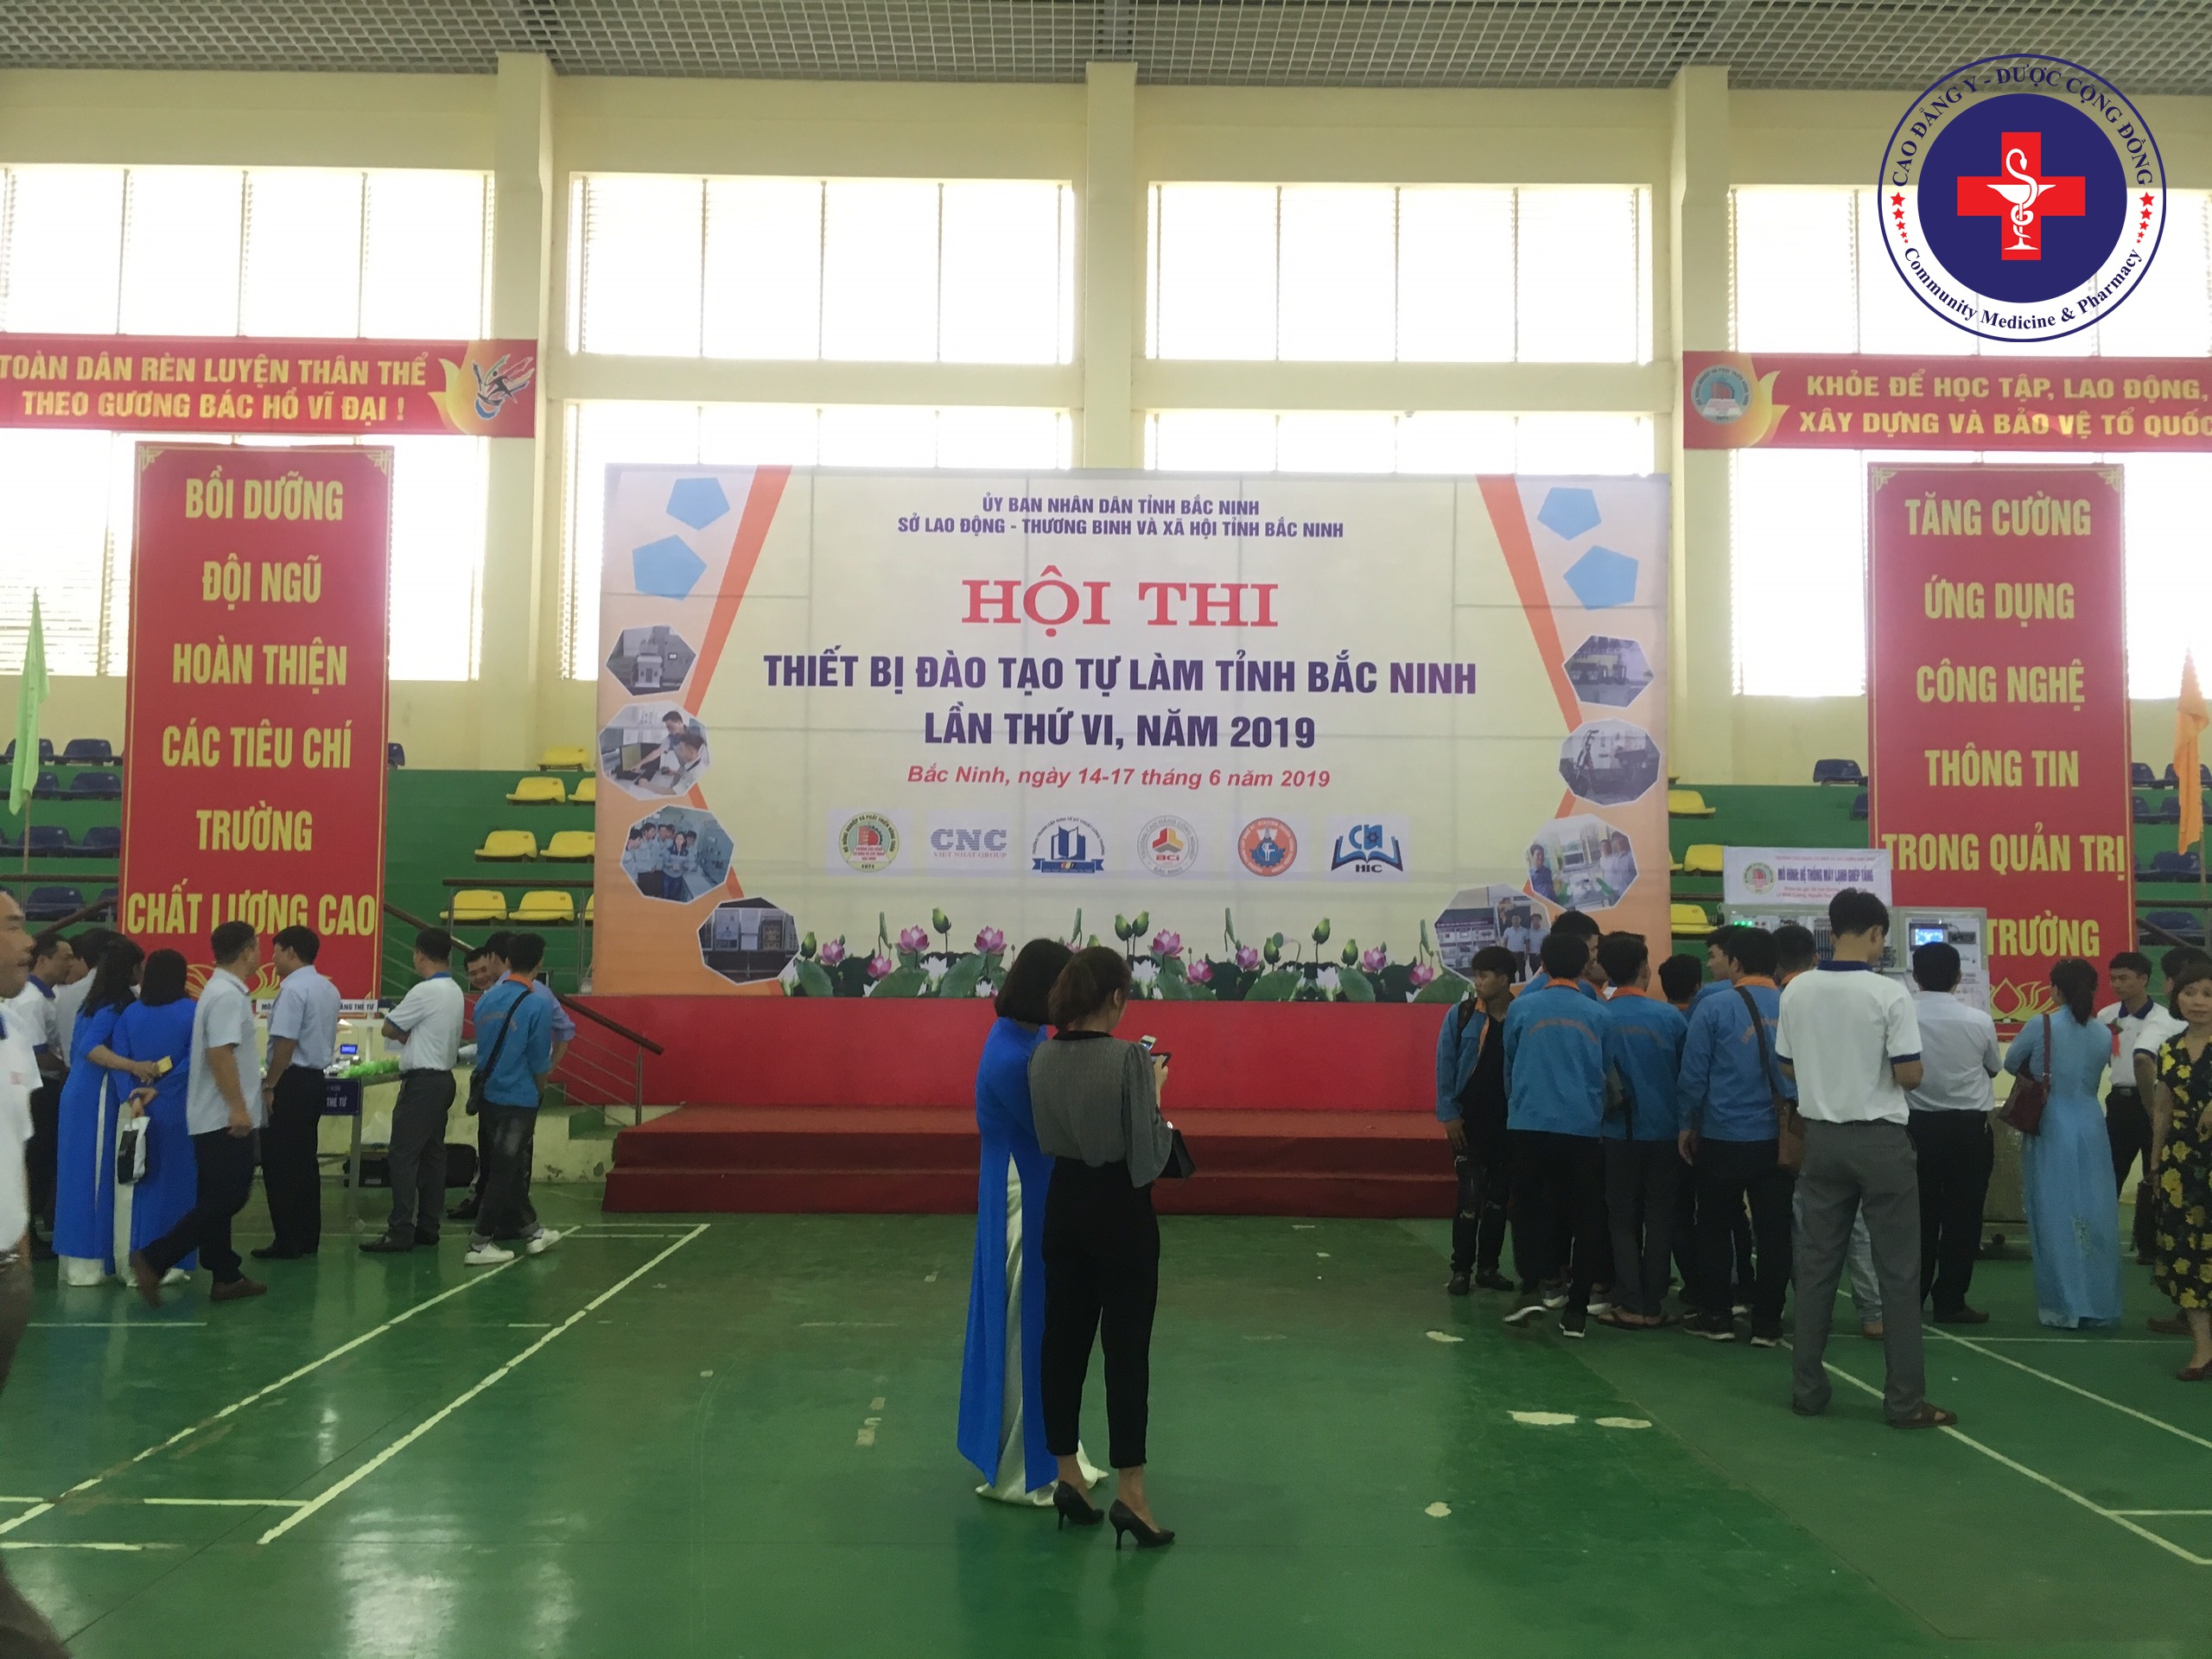 Cao đẳng Y – Dược Cộng đồng tham gia hội thi thiết bị đào tạo tự làm tỉnh  Bắc Ninh lần thứ VI - Trường Cao Đẳng Y - Dược Cộng Đồng